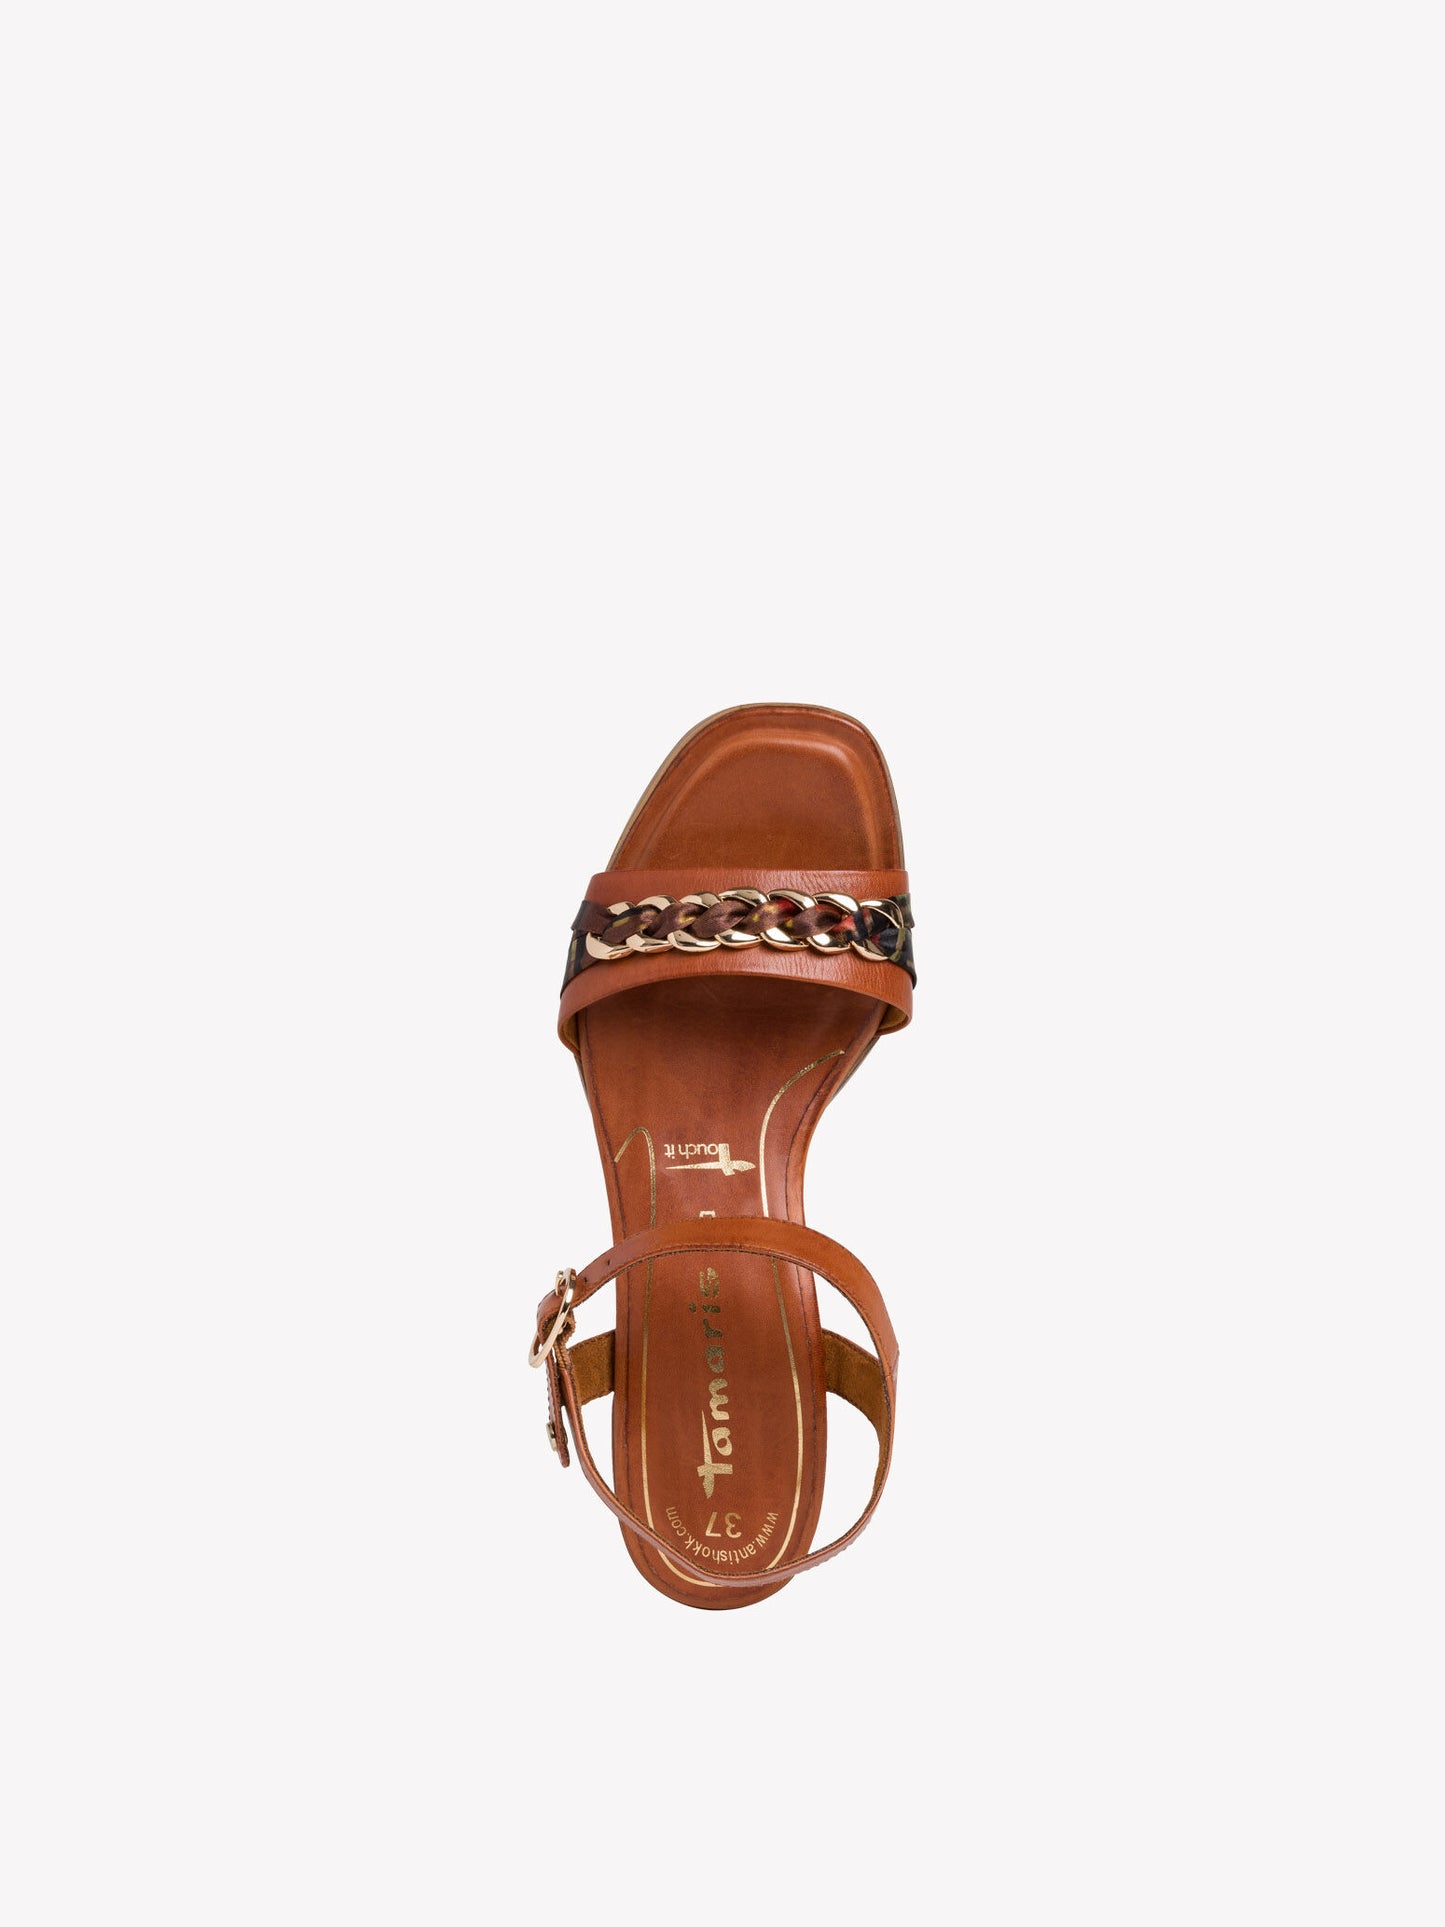 Tamaris Women's 1-28206-24 Heeled Leather Sandals Cognac Brown